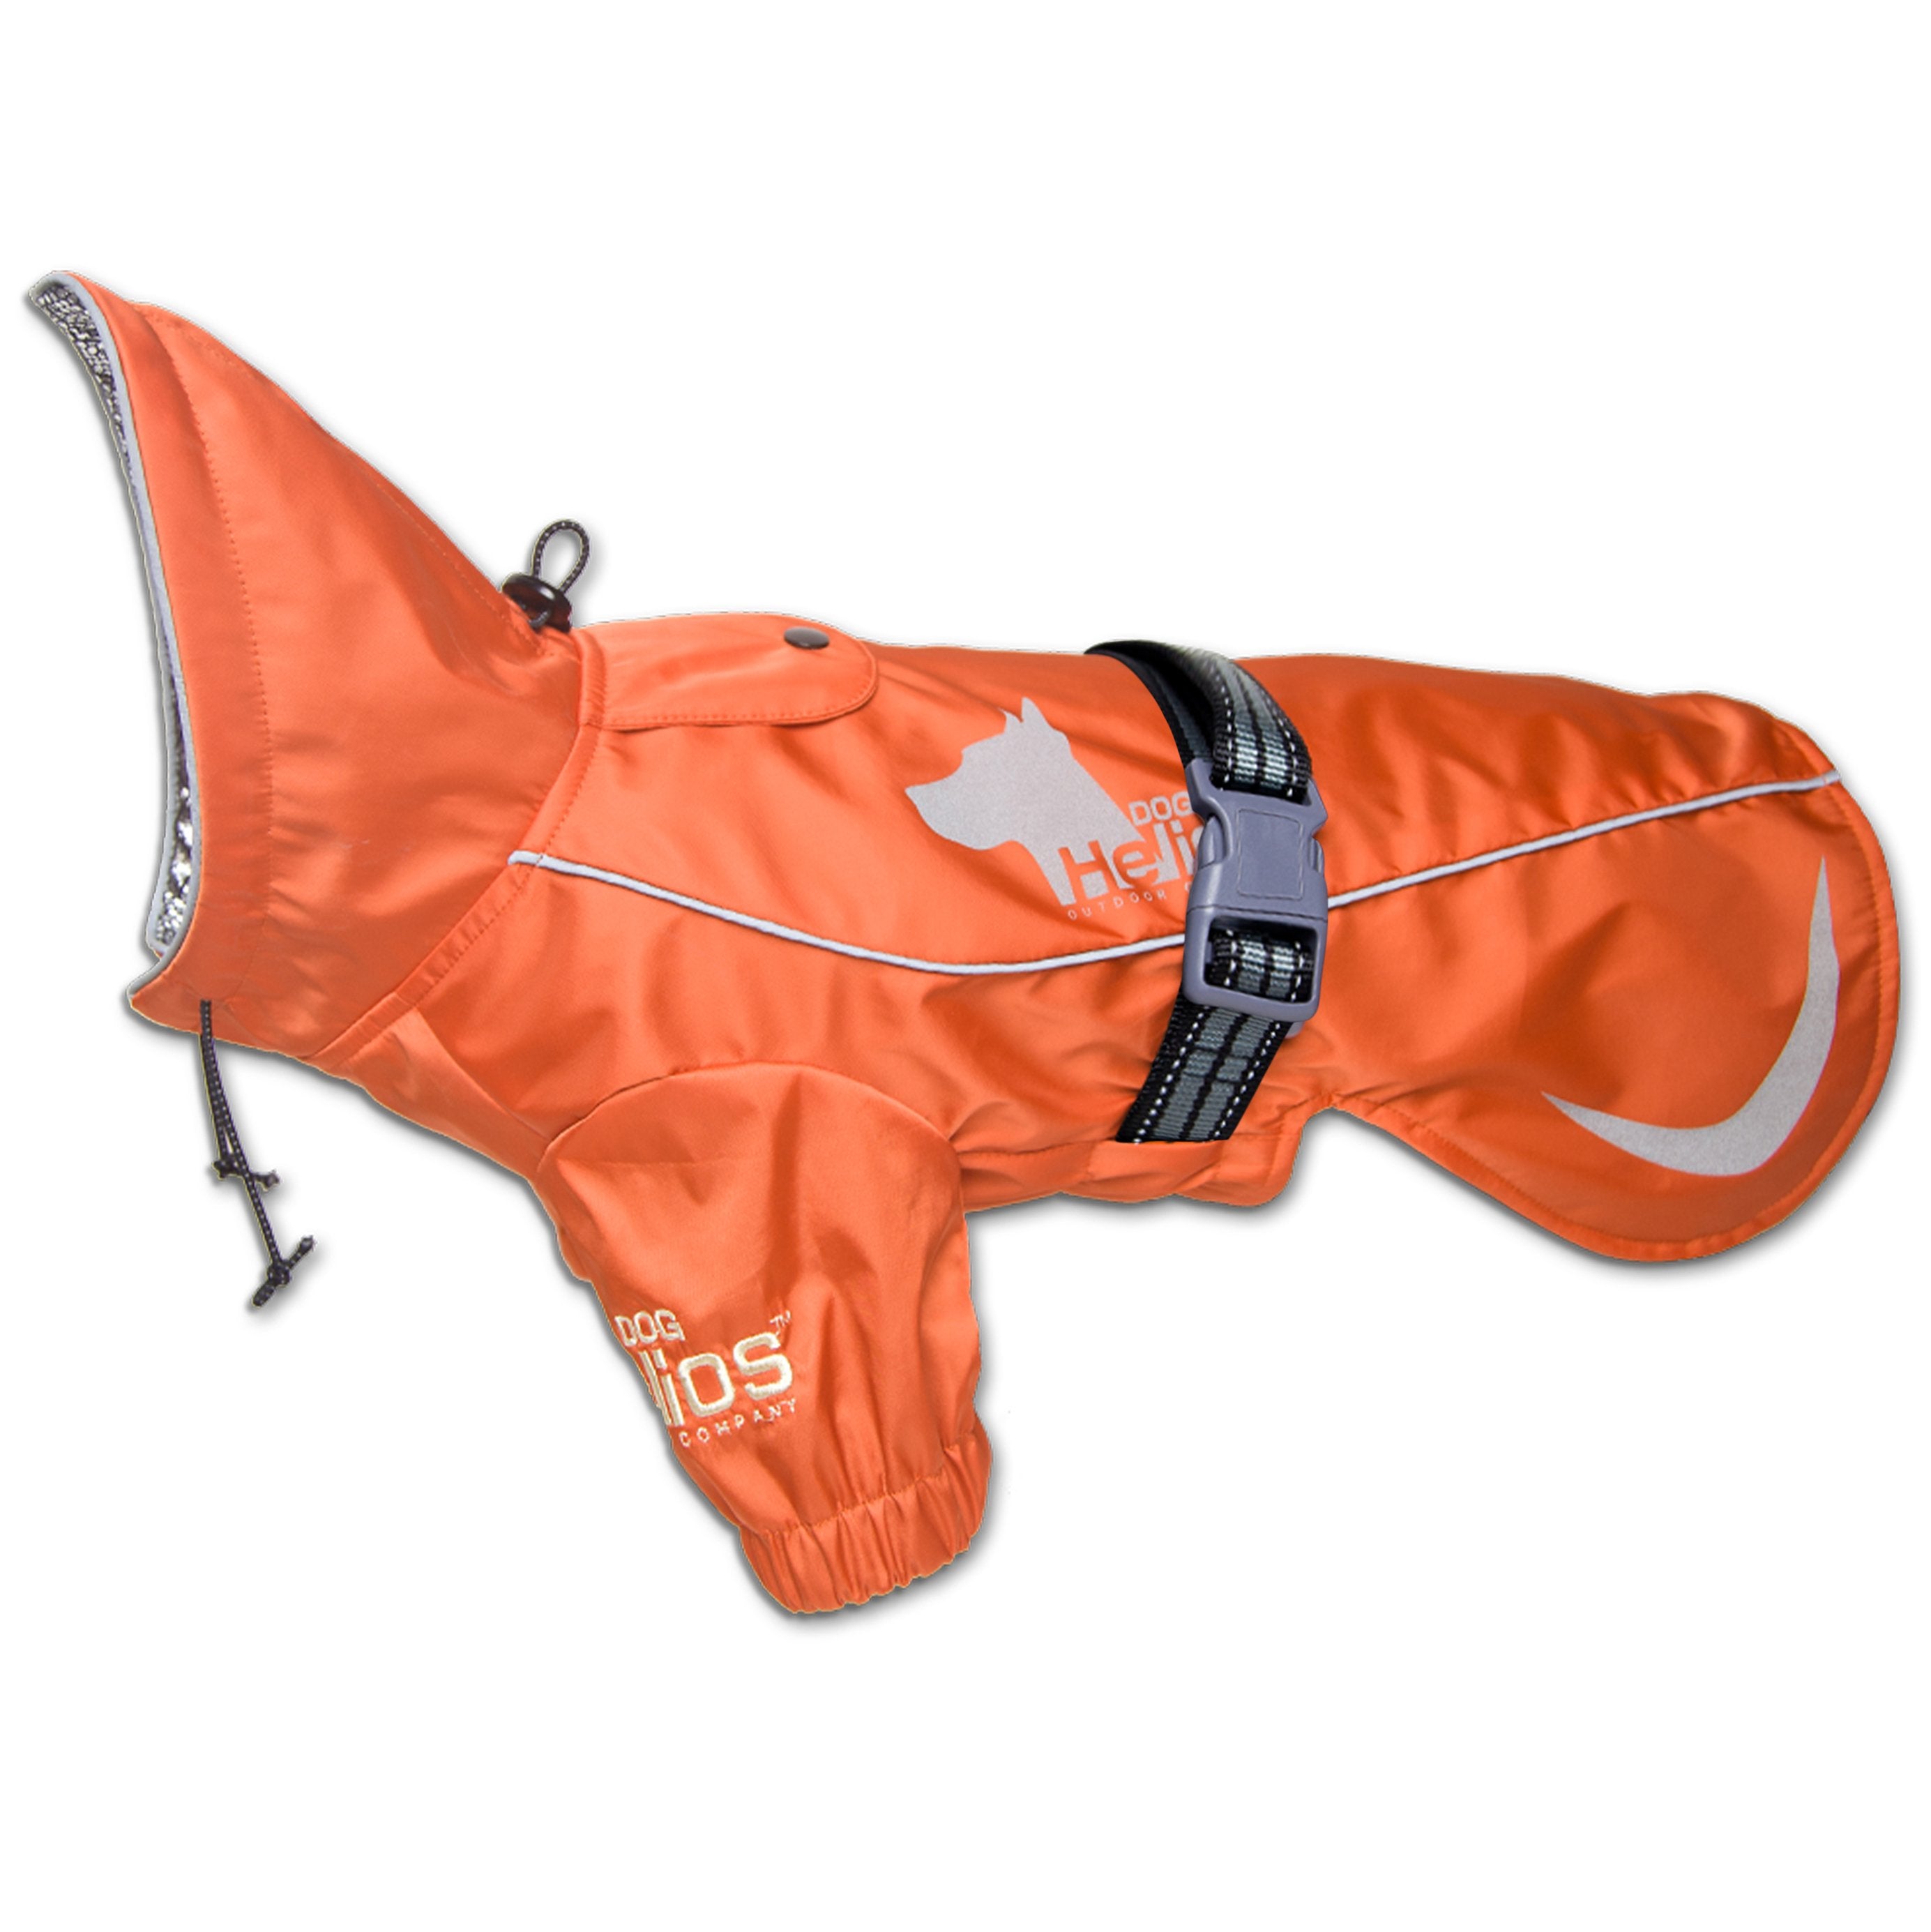 Dog Helios® 'Ice-Breaker' Hooded Dog Coat W/ Heat Reflective Tech - Orange - X-Large